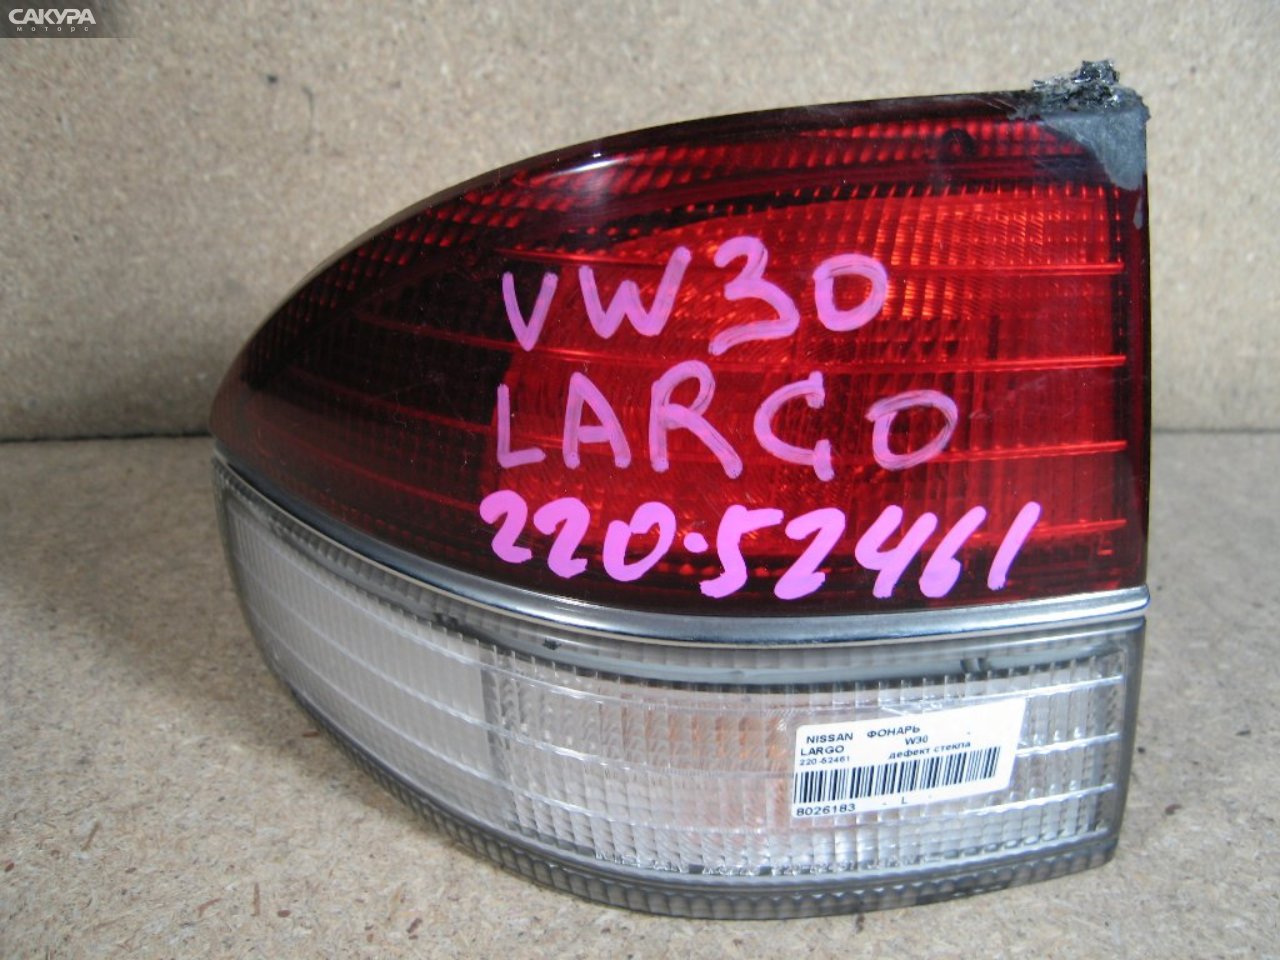 Фонарь стоп-сигнала левый Nissan Largo W30 220-52461: купить в Сакура Абакан.